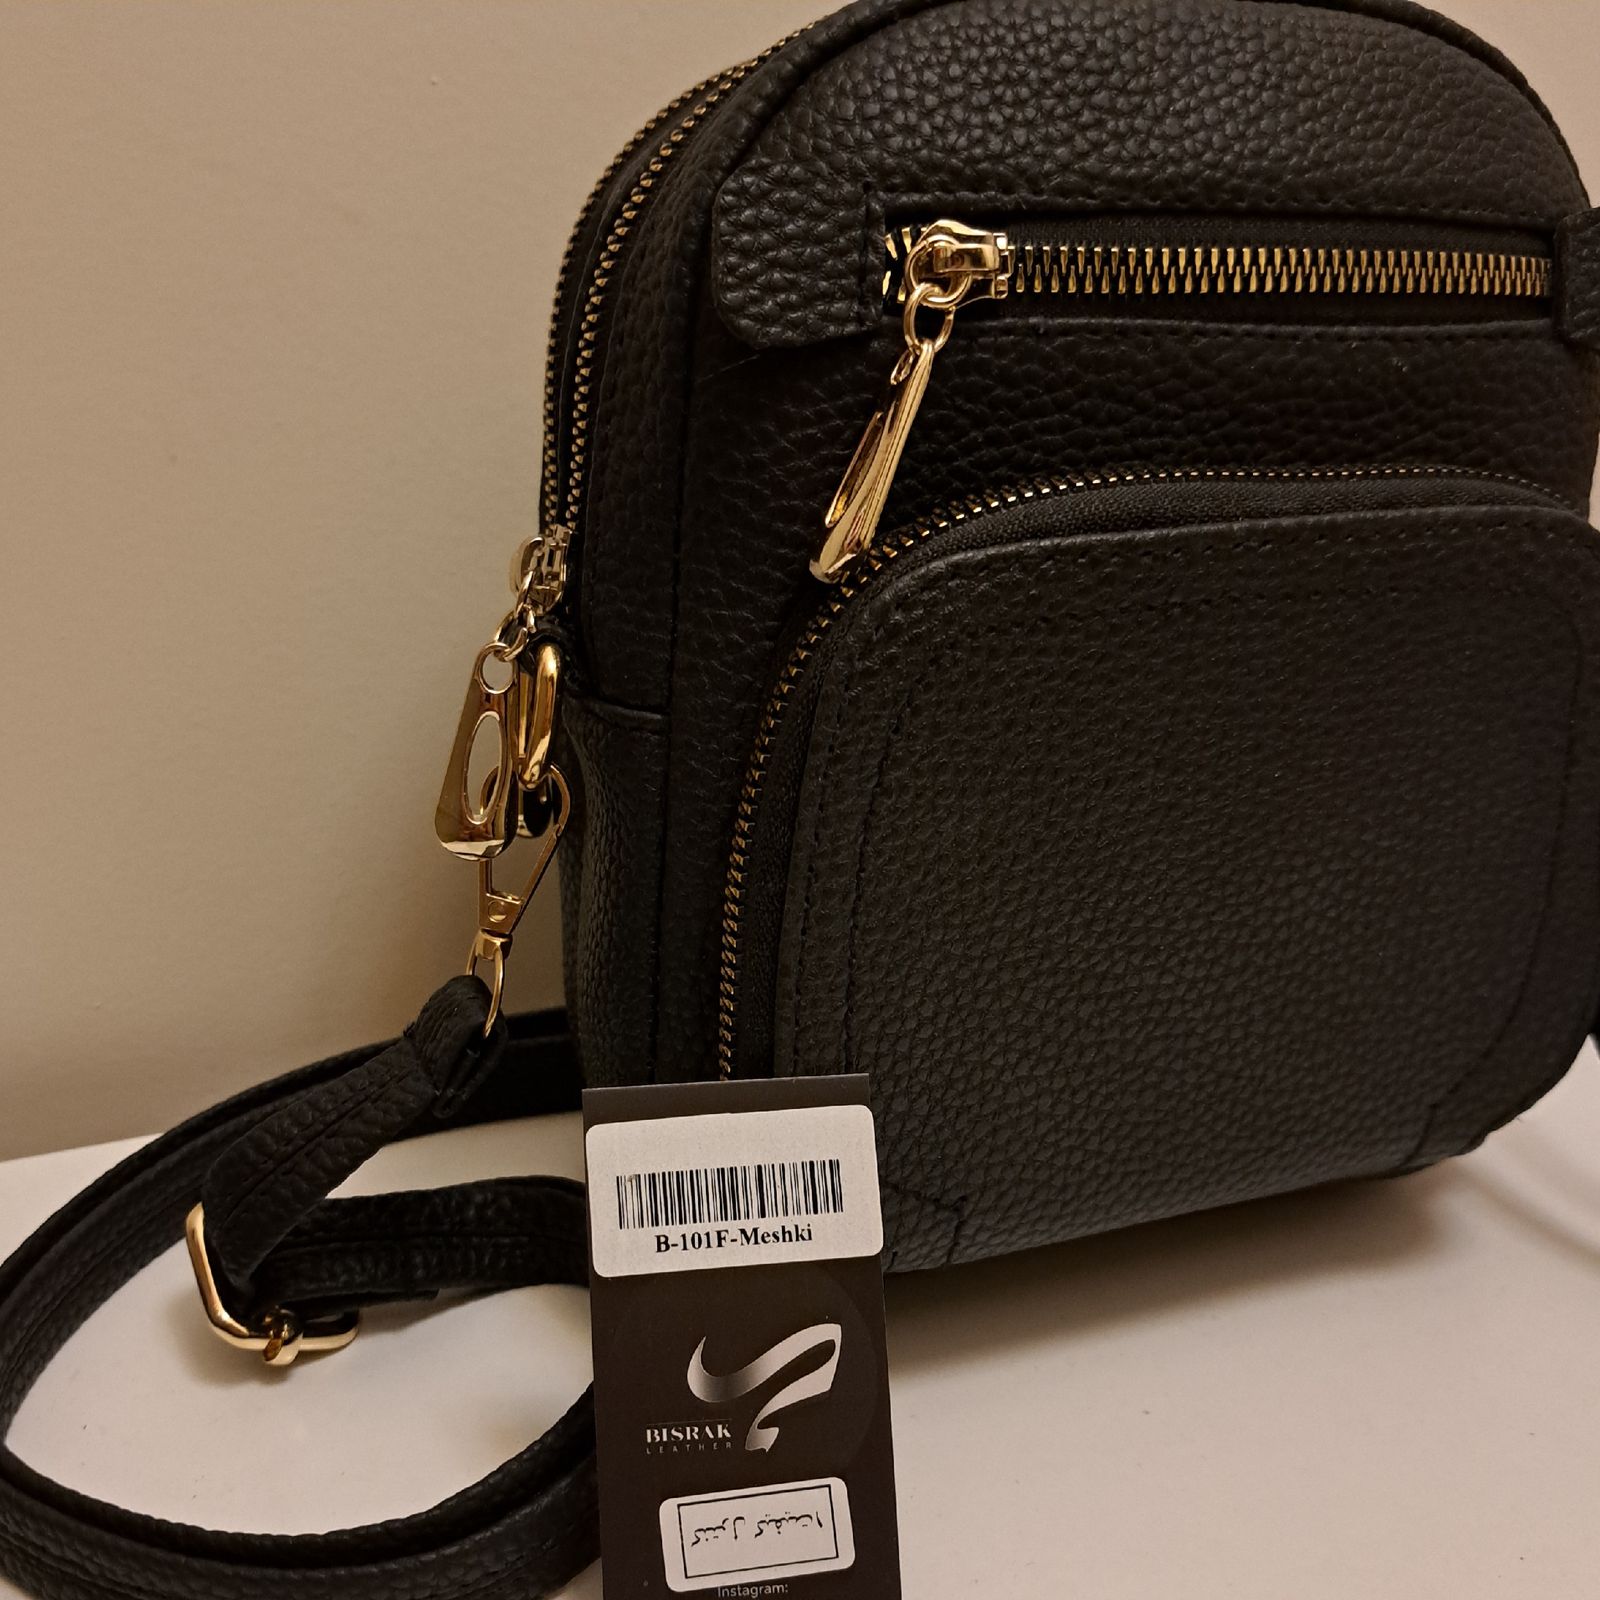 کیف دوشی زنانه بیسراک مدل cross-body کد 404010 رنگ مشکی -  - 5